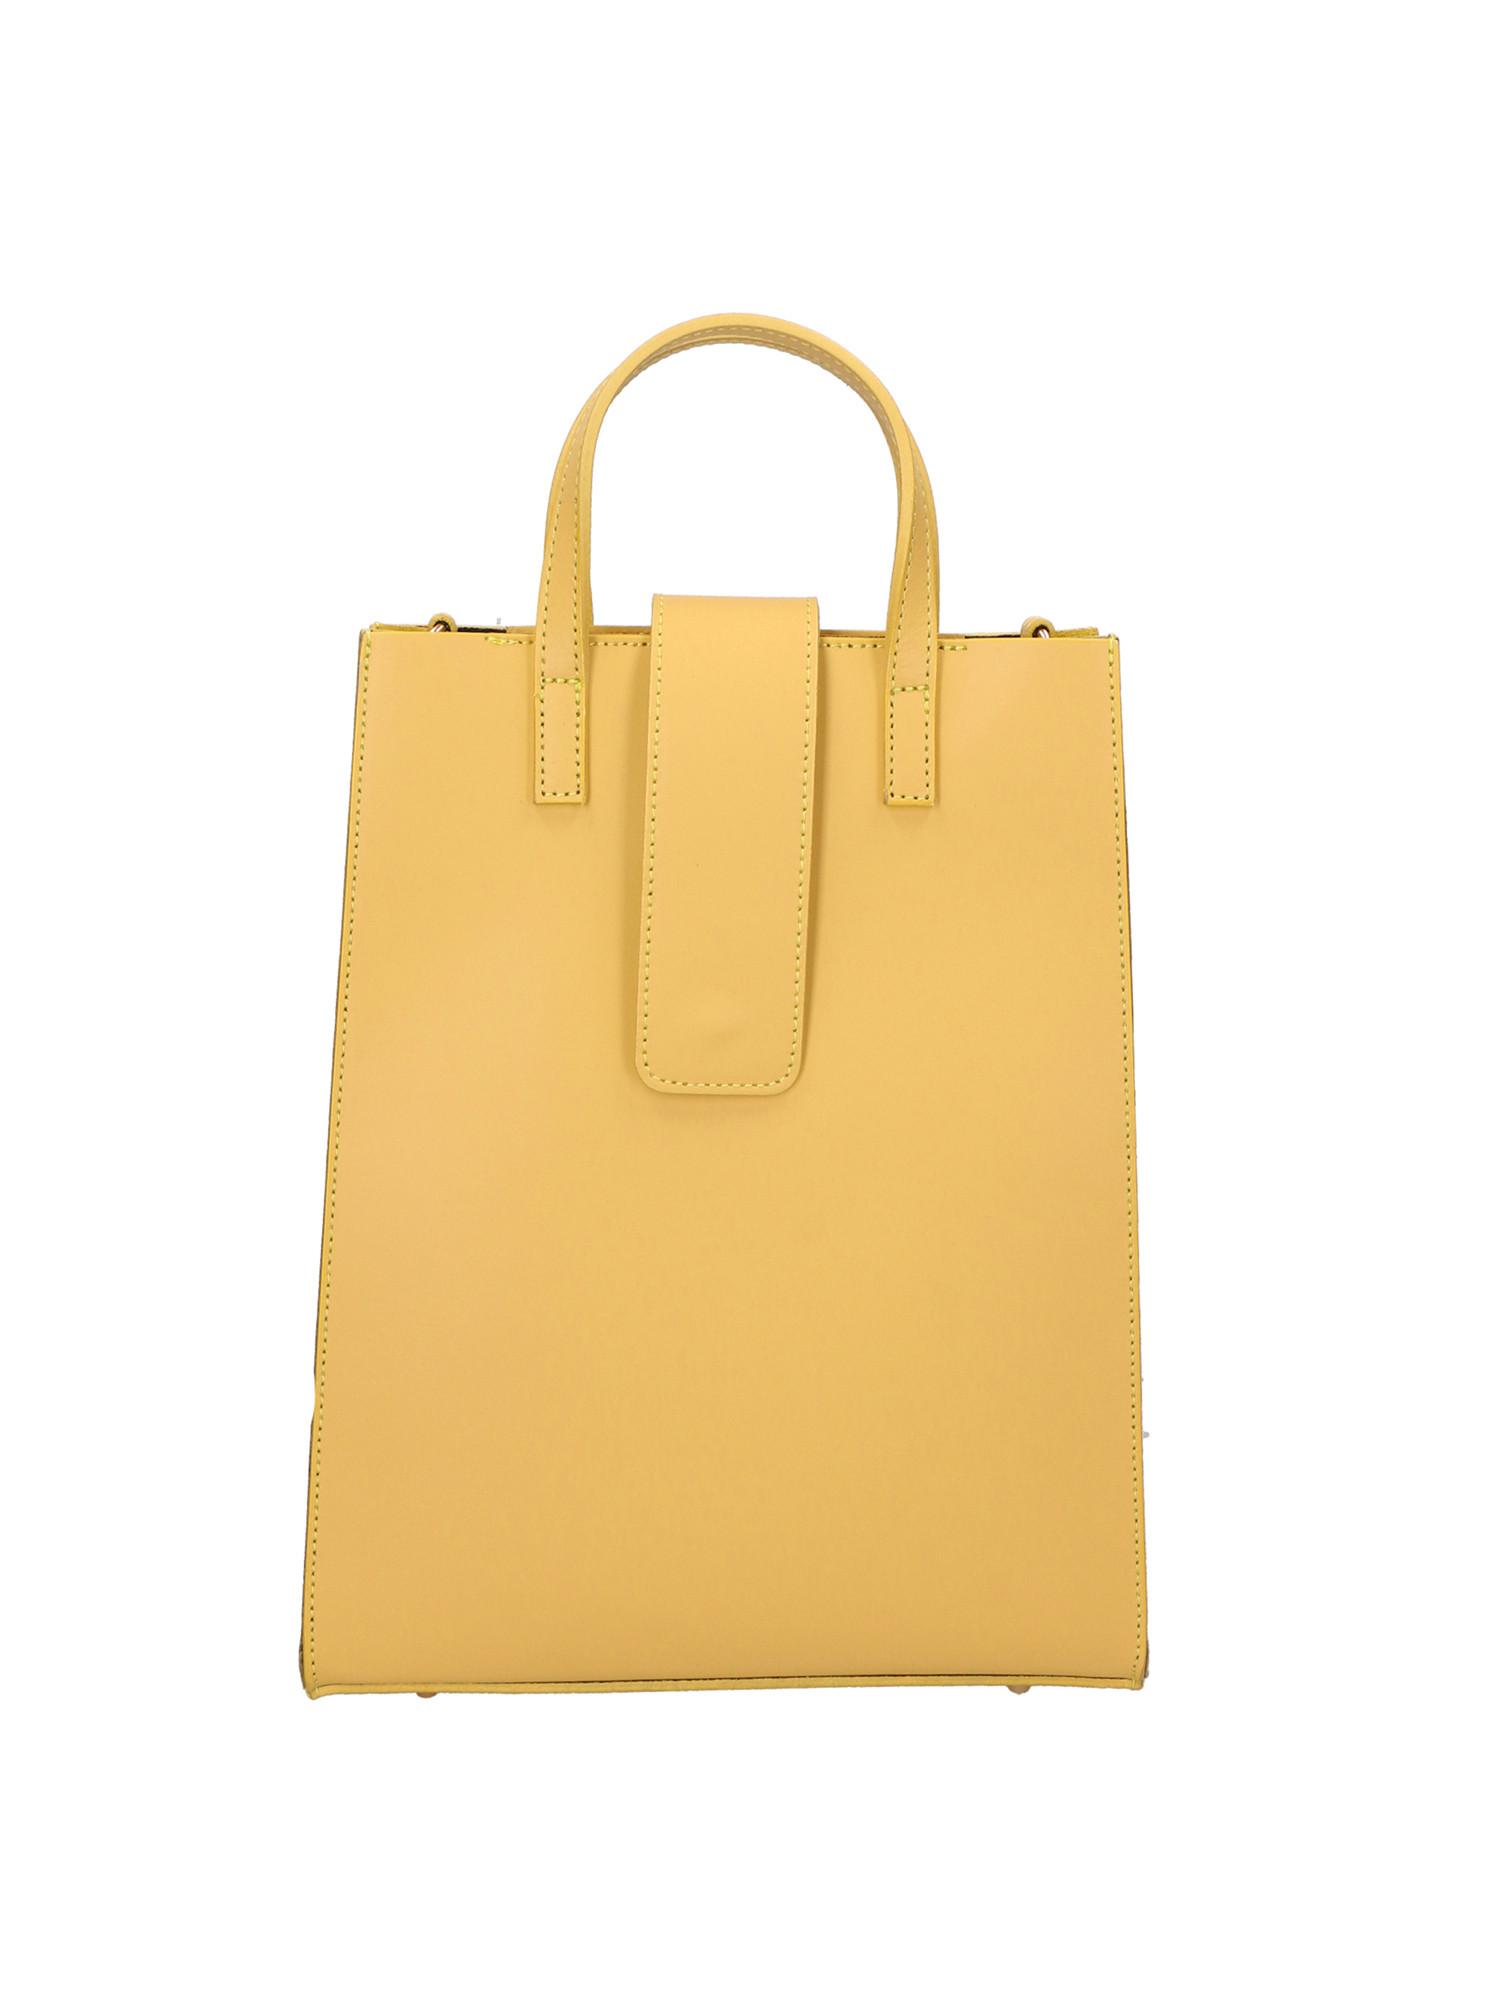 Handtasche Damen Gelb Pastel ONE SIZE von Gave Lux